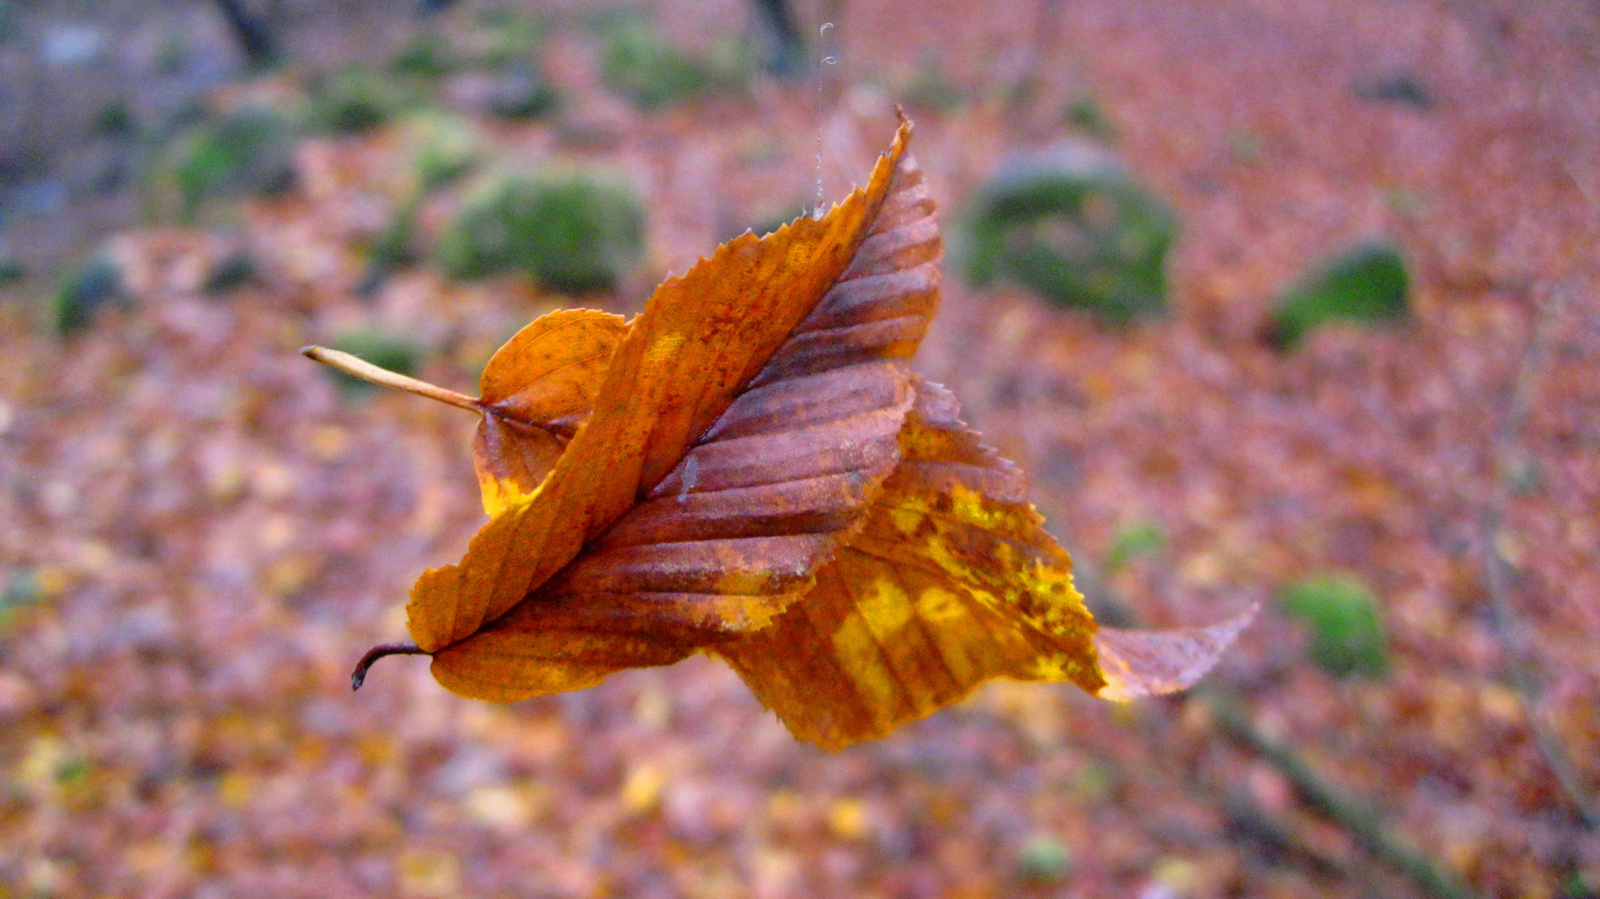 Suicidal leaves